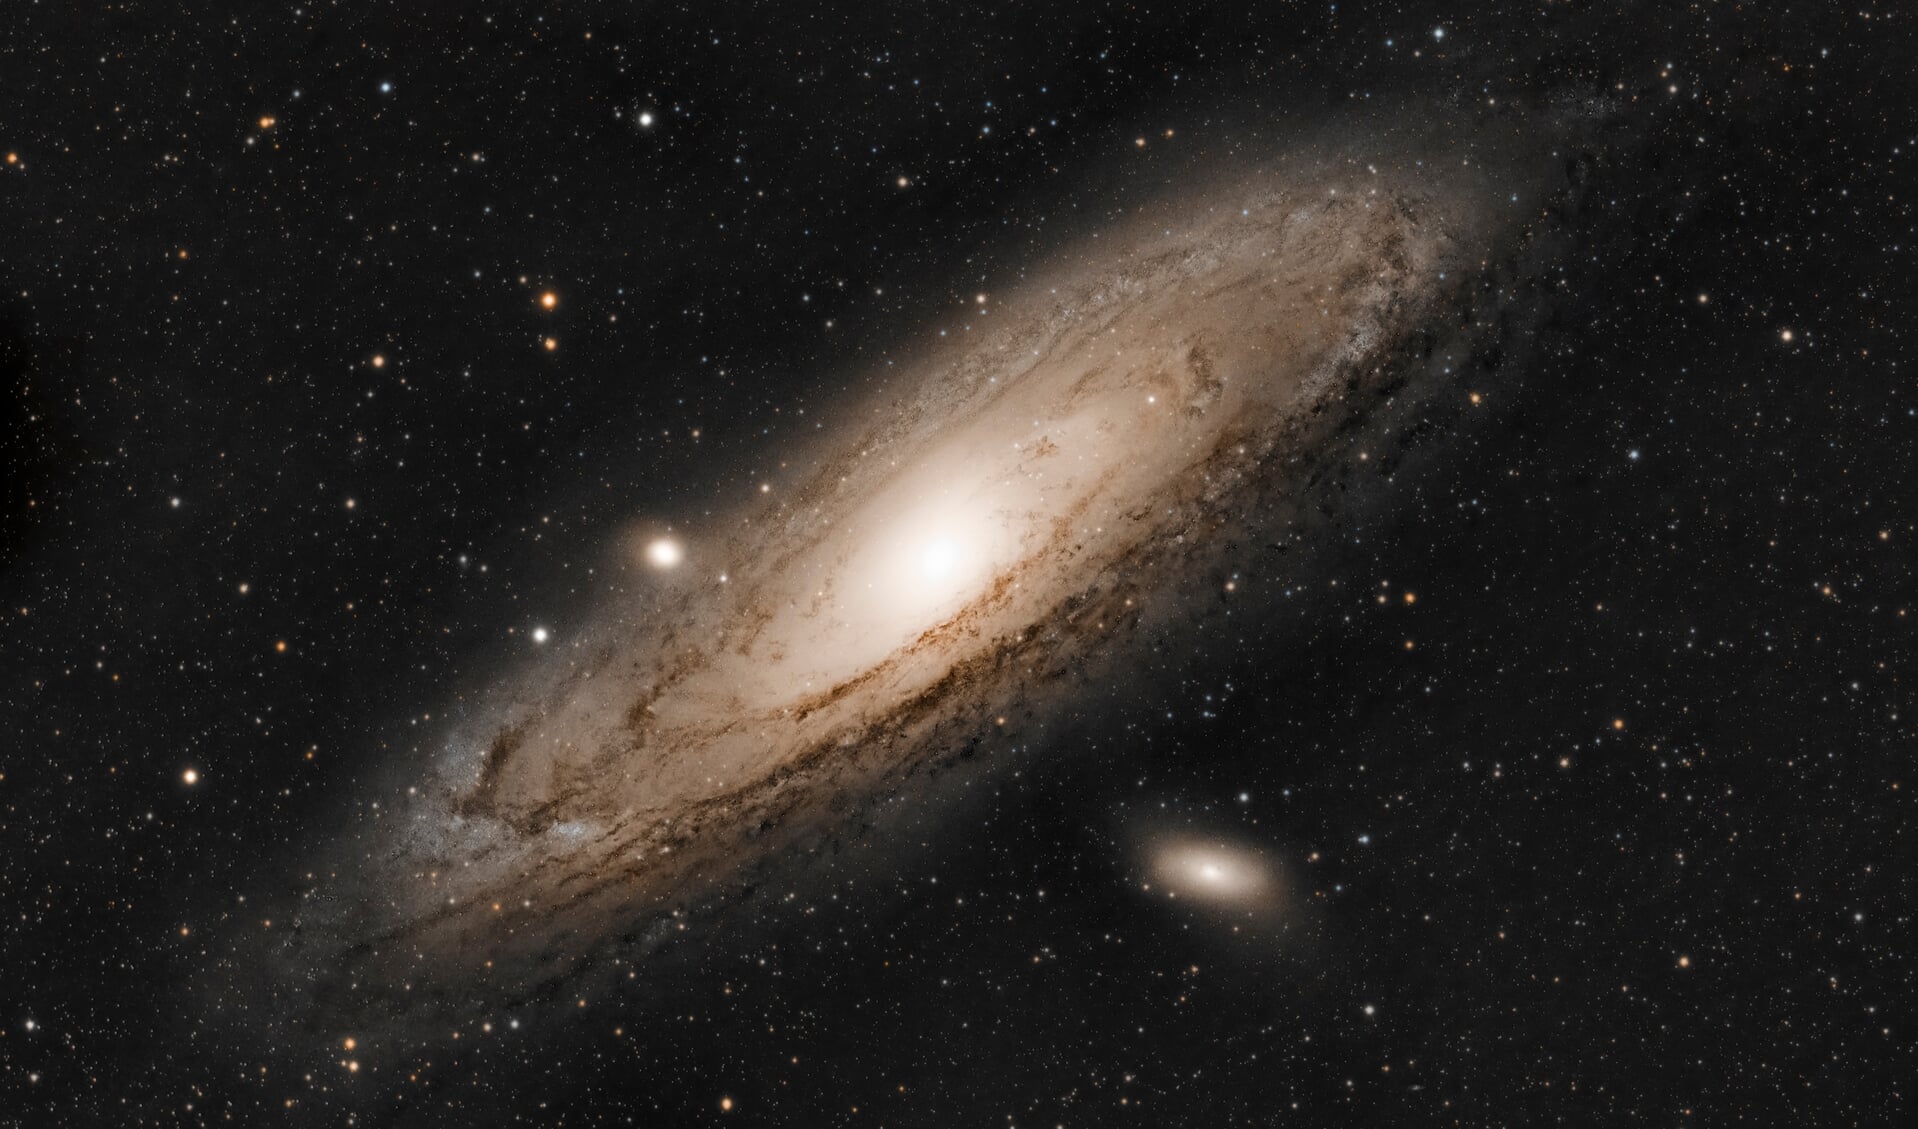 Een foto van het Andromedastelsel, opgebouwd uit 40 opnames van 5 minuten. Het stelsel bevat zo'n 300 miljard sterren. 